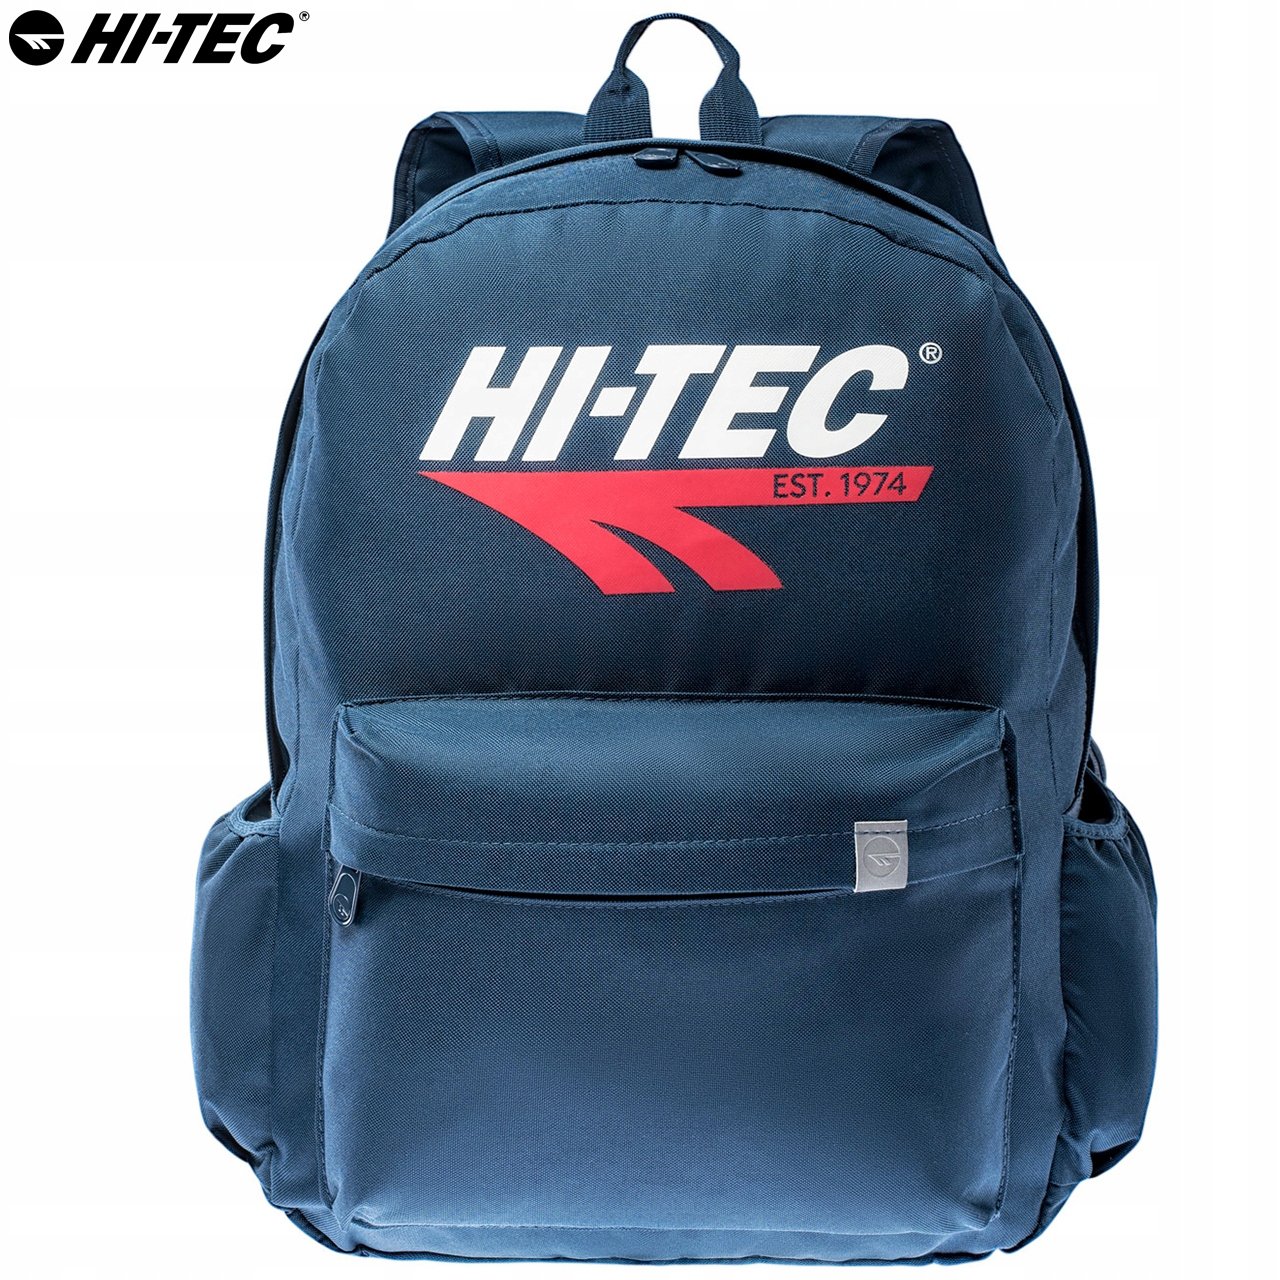 Рюкзак BRIGG HI-TEC Туристический Школьный Городской 28 л Темно-синий бренд Hi-Tec